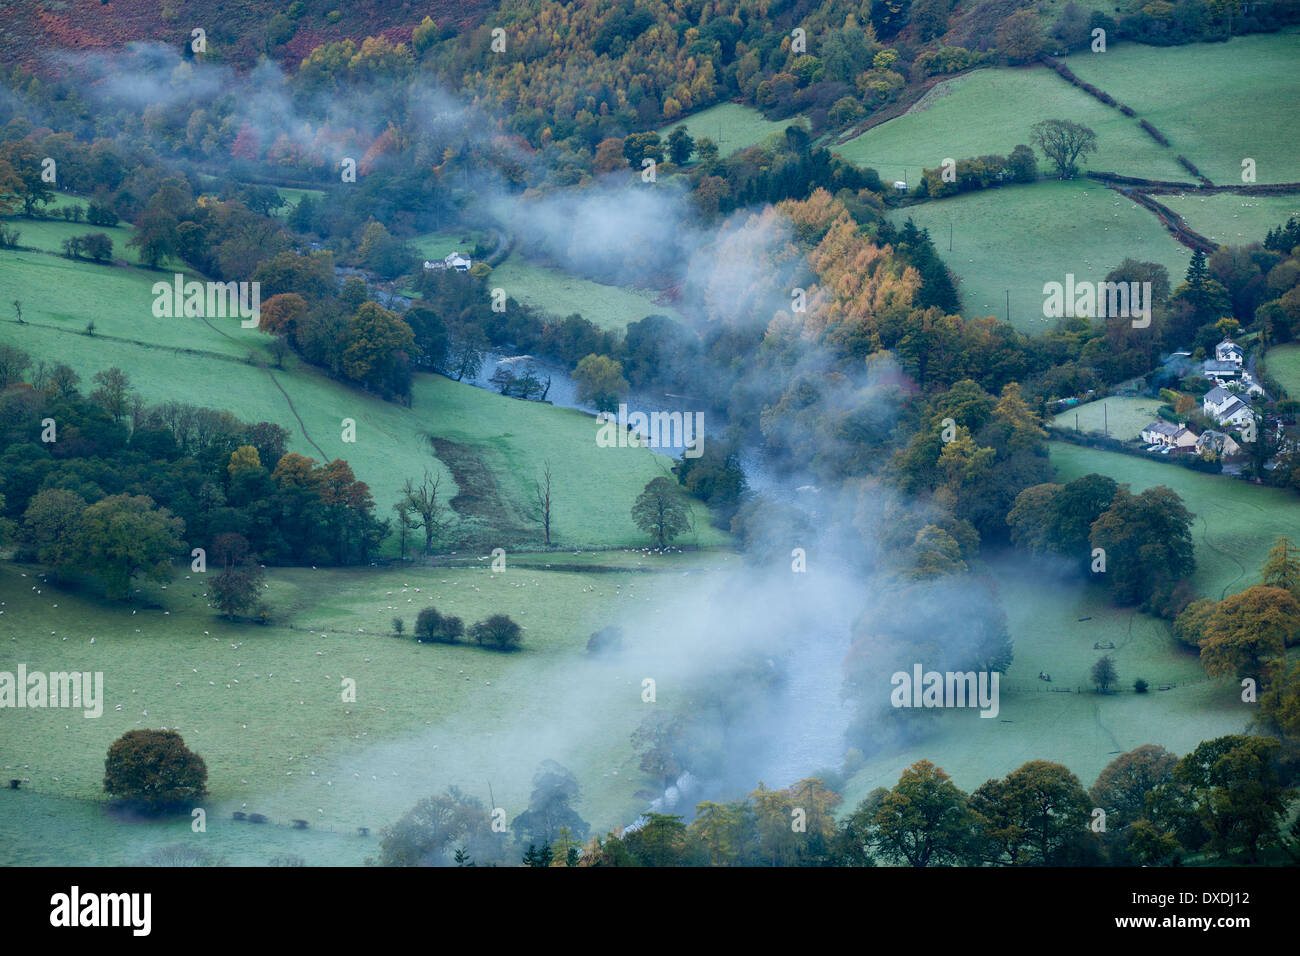 Autumn colours and mist in the Dee Valley (Dyffryn Dyfrdwy) near Llangollen, Denbighshire, Wales Stock Photo